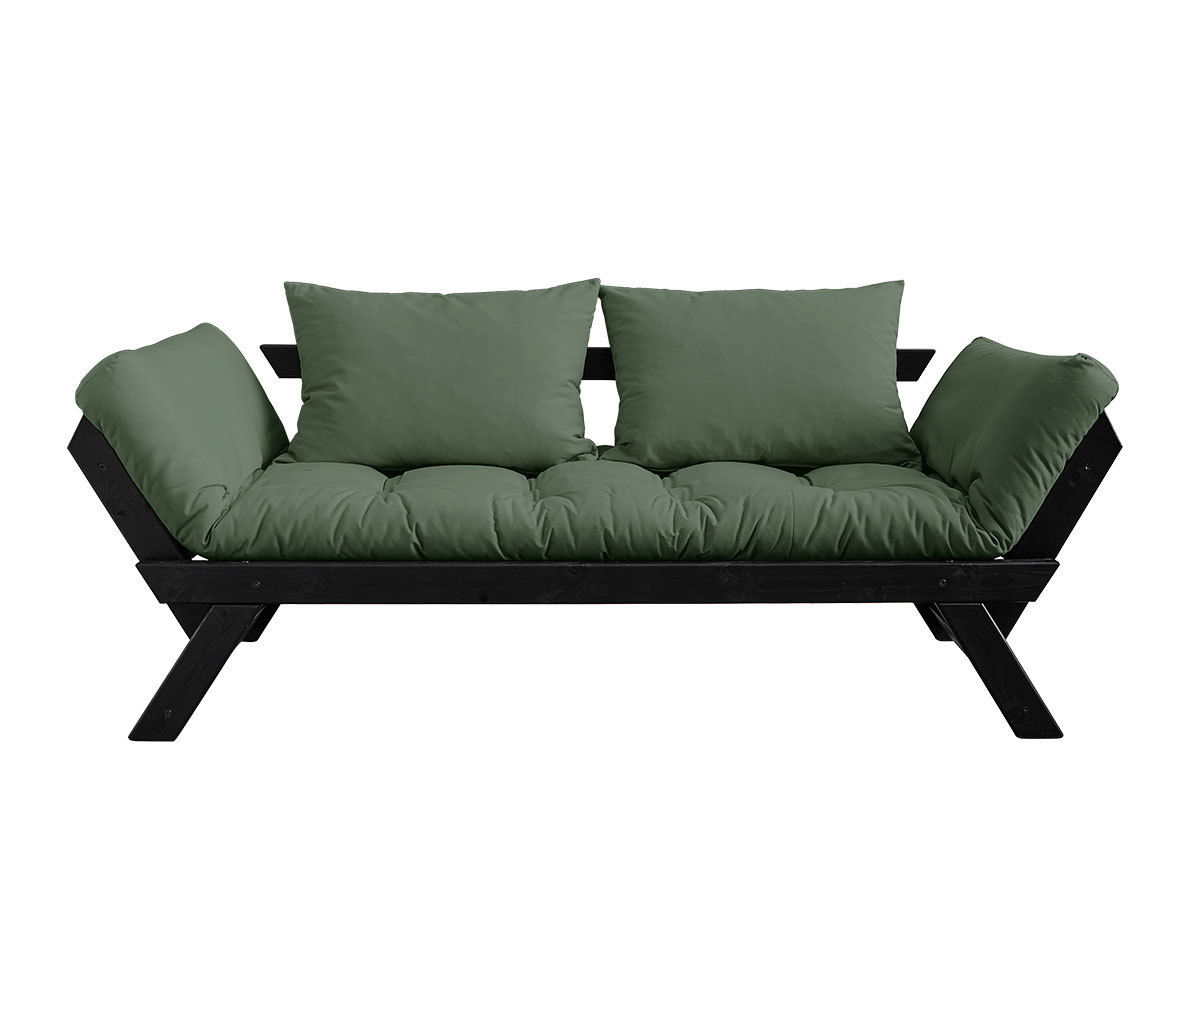 Karup Design Bebop-futonsohva olive green/musta, L 180 cm